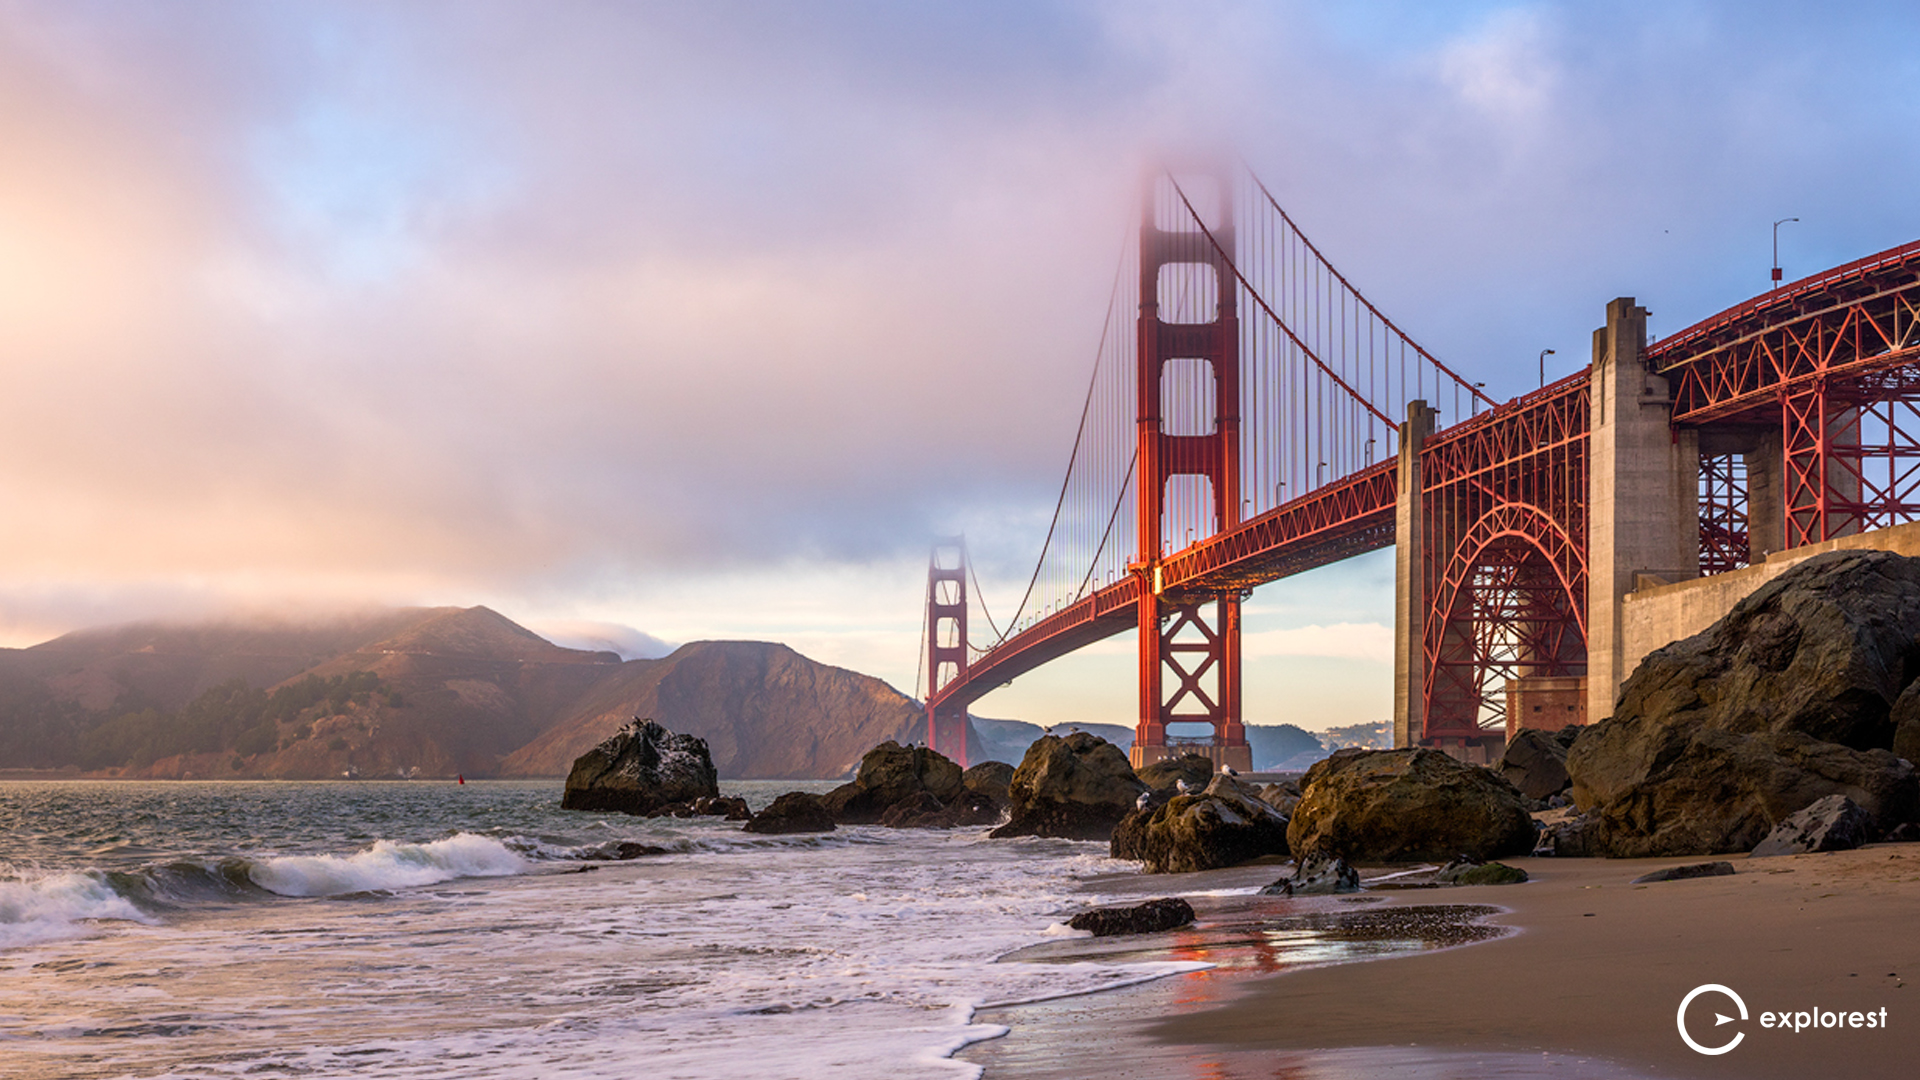 Marshall's Beach view of Golden Gate Bridge